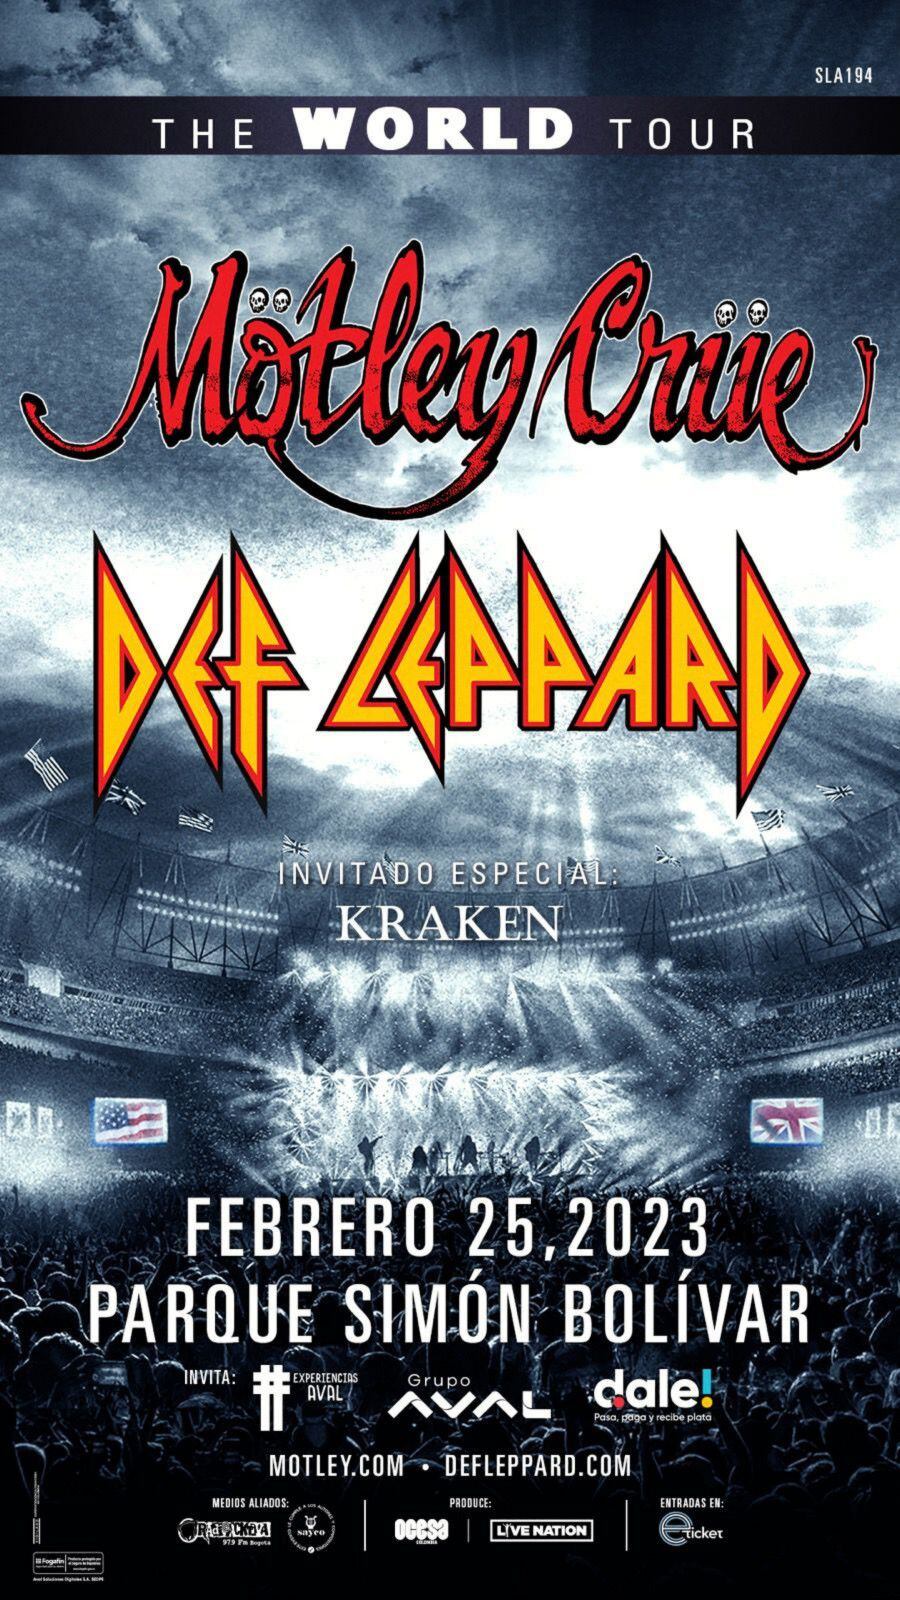 Kraken será el artista invitado en concierto de Def Leppard y Mötley Crüe en Bogotá